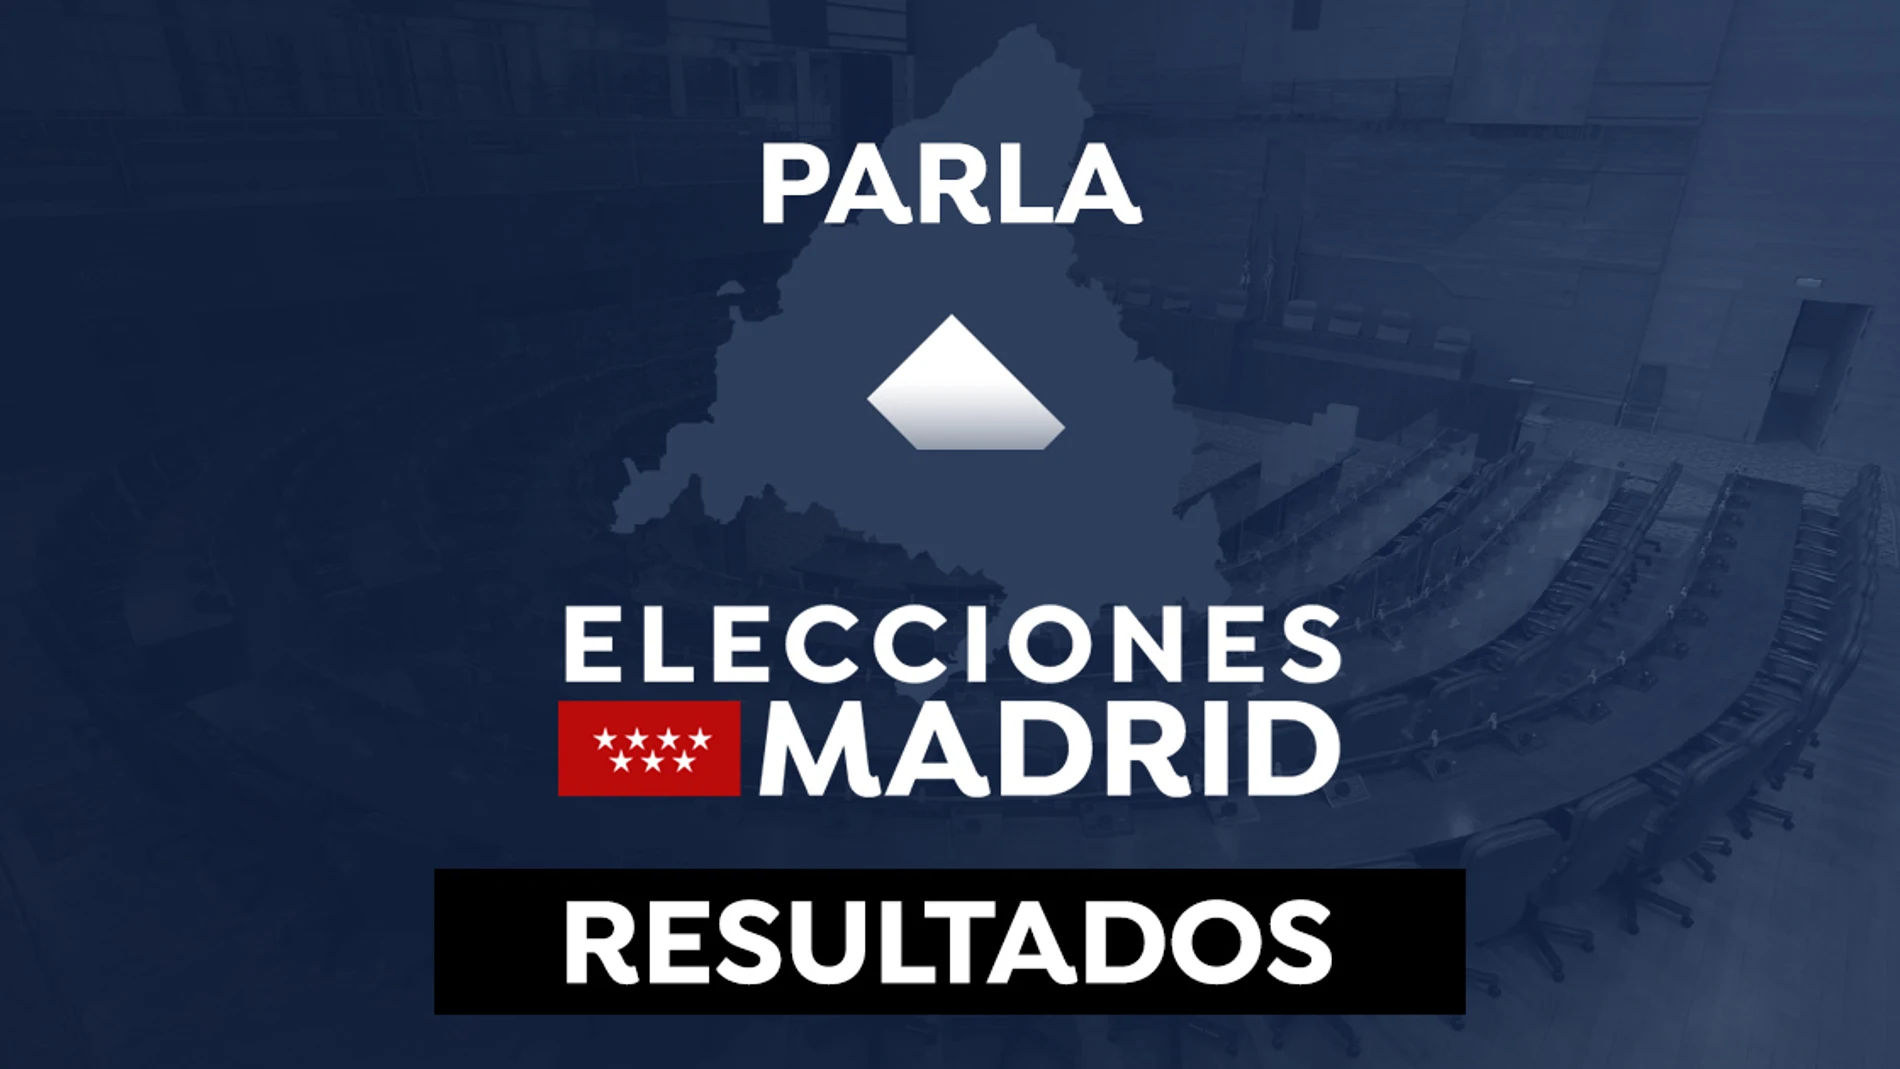 Resultado en Parla de las elecciones a la Comunidad de Madrid